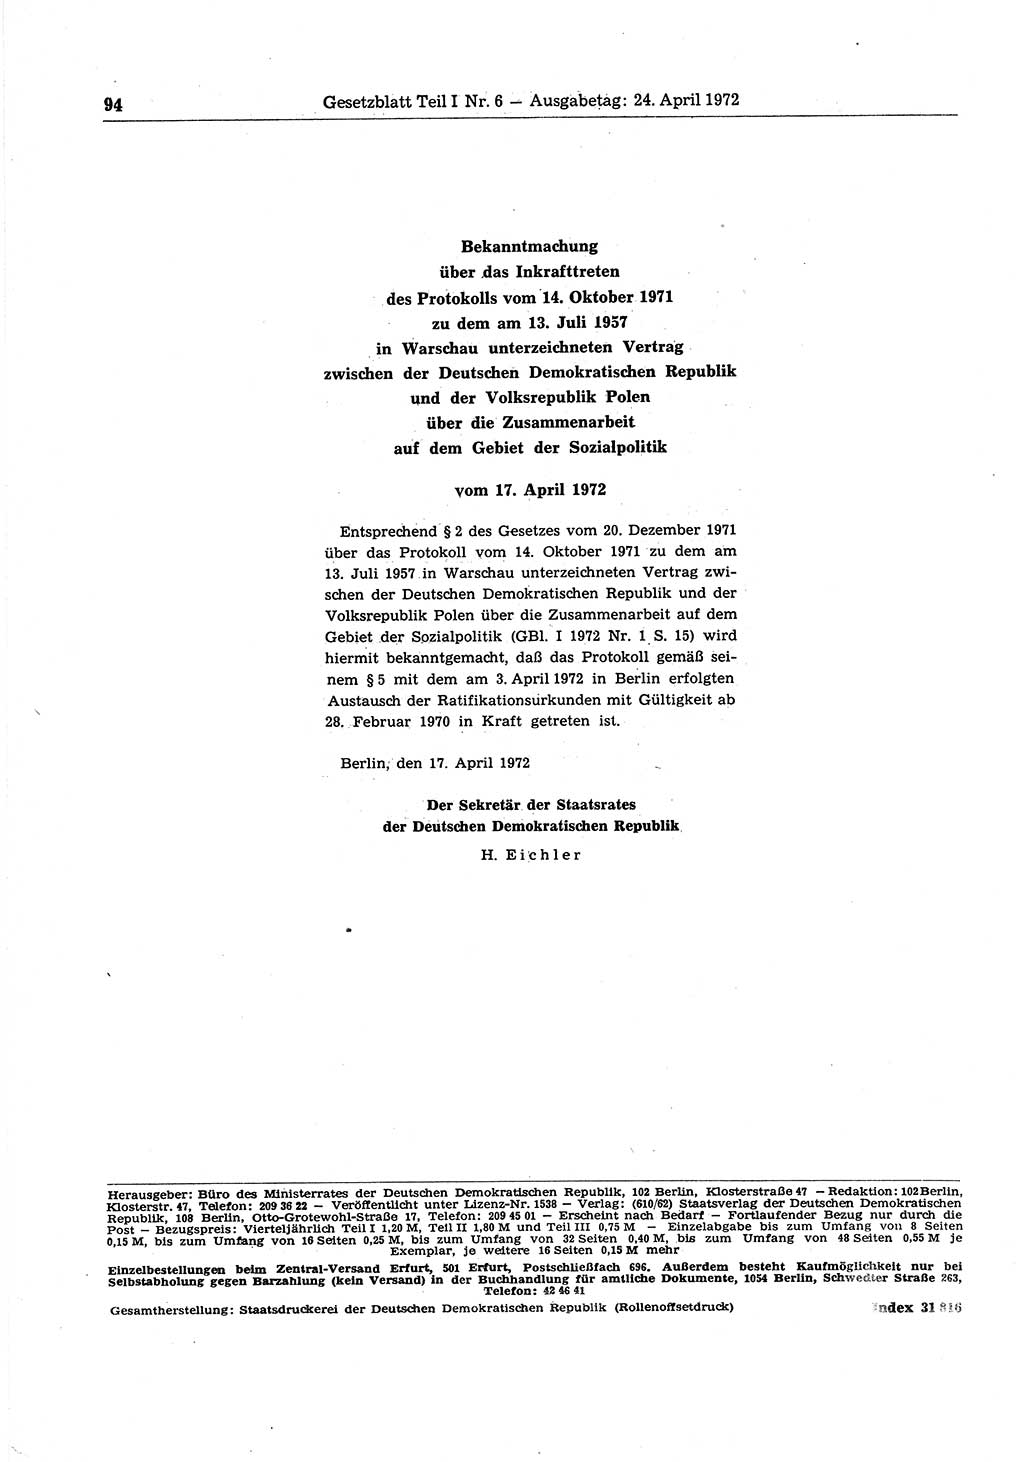 Gesetzblatt (GBl.) der Deutschen Demokratischen Republik (DDR) Teil Ⅰ 1972, Seite 94 (GBl. DDR Ⅰ 1972, S. 94)